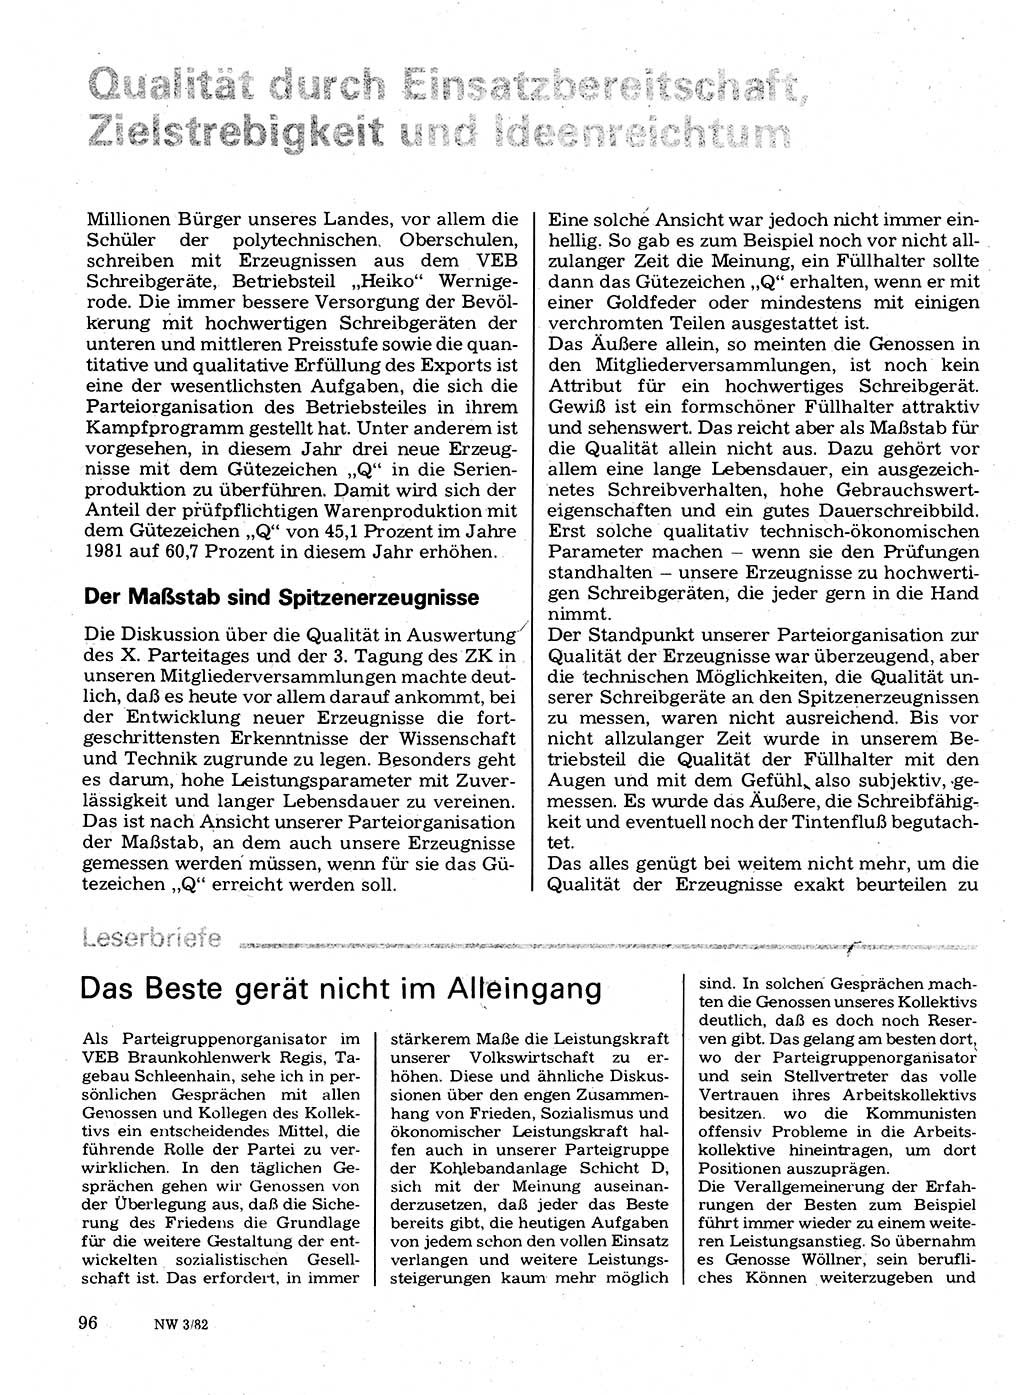 Neuer Weg (NW), Organ des Zentralkomitees (ZK) der SED (Sozialistische Einheitspartei Deutschlands) für Fragen des Parteilebens, 37. Jahrgang [Deutsche Demokratische Republik (DDR)] 1982, Seite 96 (NW ZK SED DDR 1982, S. 96)